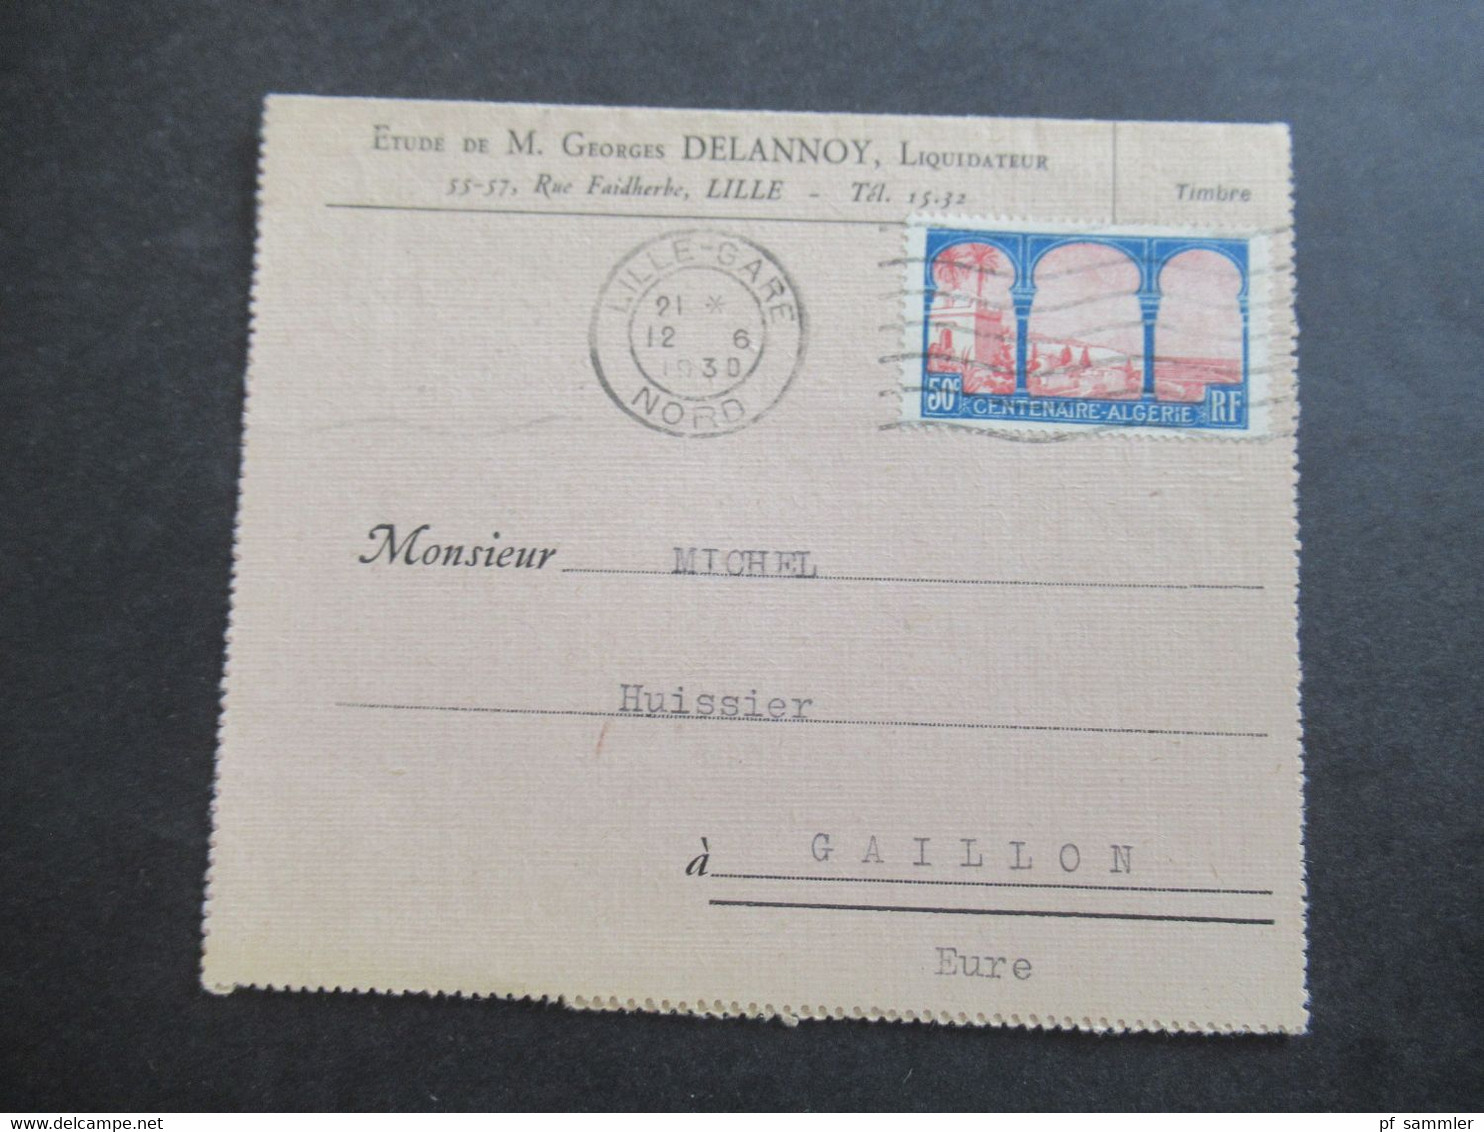 Frankreich 1930 Centeaire Algerie Kartenbrief Etude De M. Geotges Delannoy, Liquidateur Lille Nach Gaillon Gesendet - Brieven En Documenten